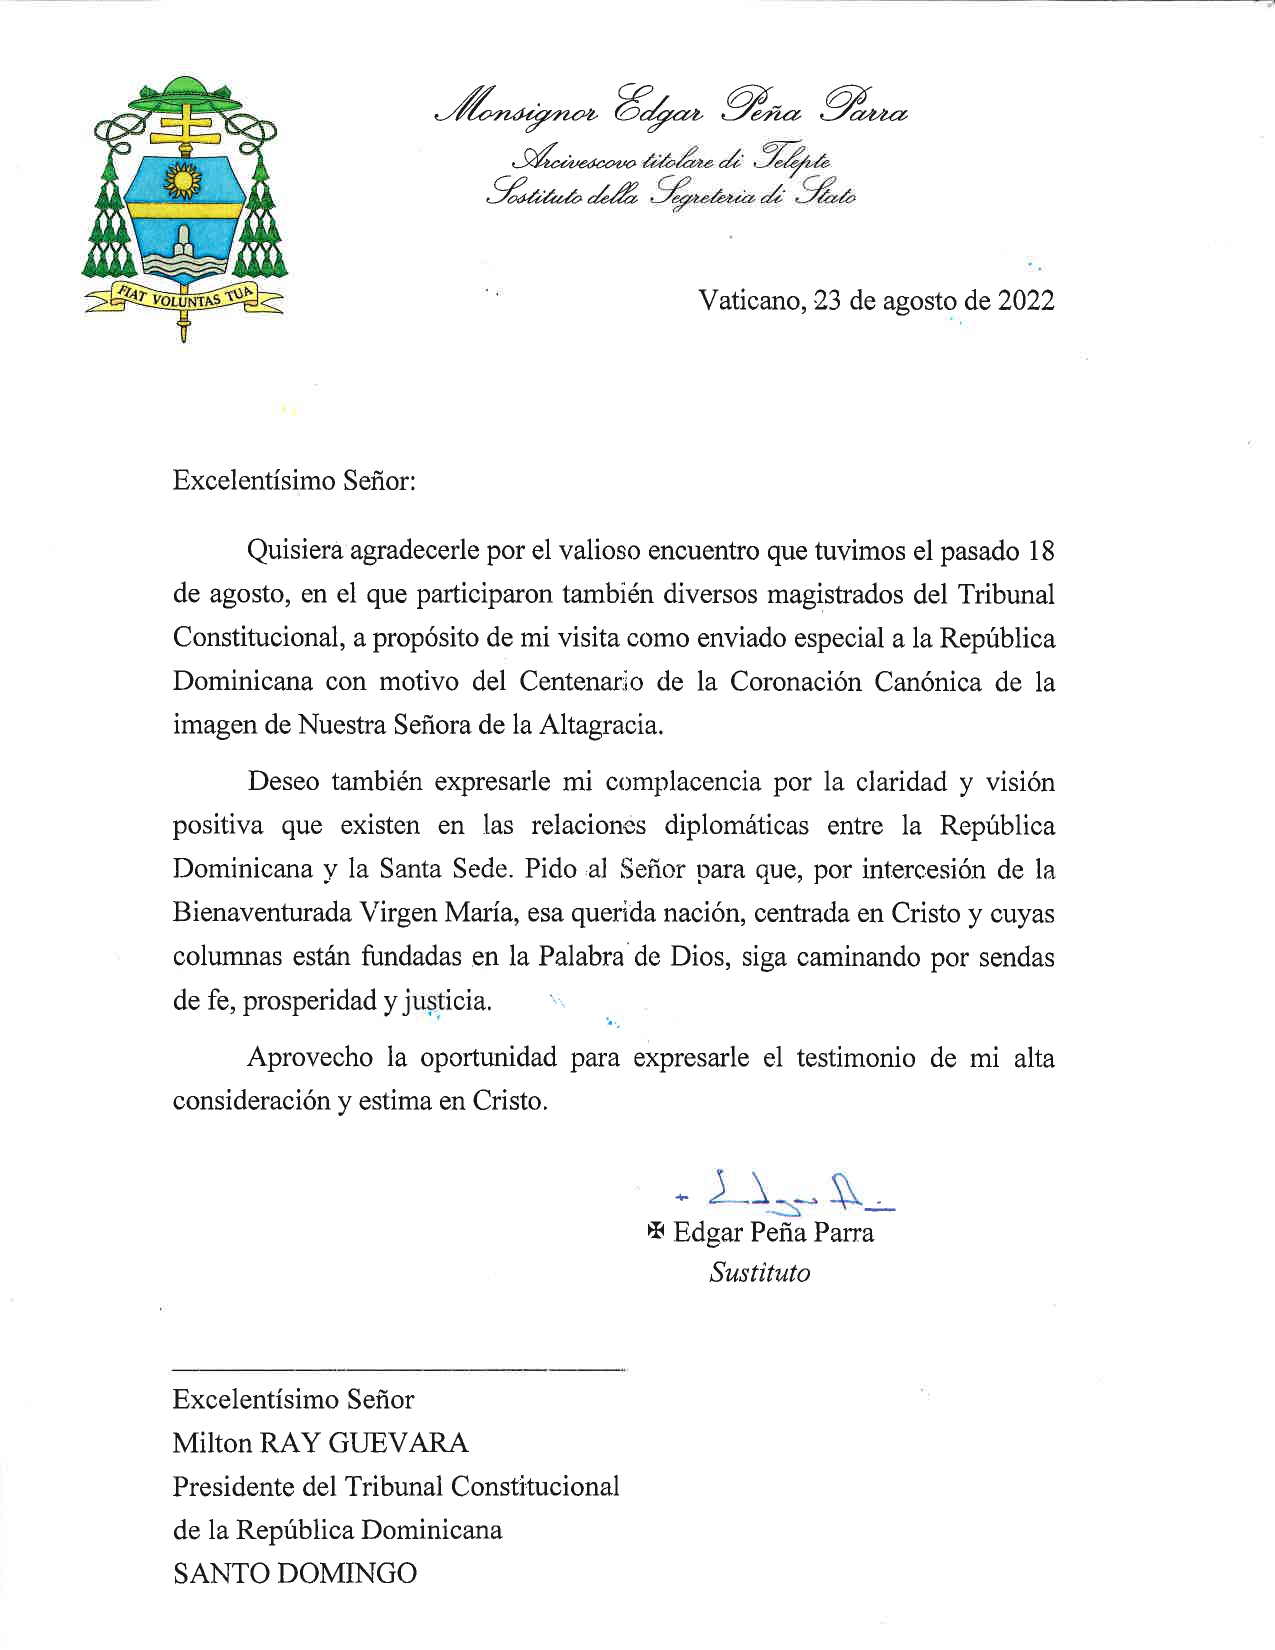 Carta remitida por el S.E. monseñor Edgar Peña Parra, sustituto para los Asuntos Generales de la Secretaría de Estado del Vaticano, delegado del Papa Francisco